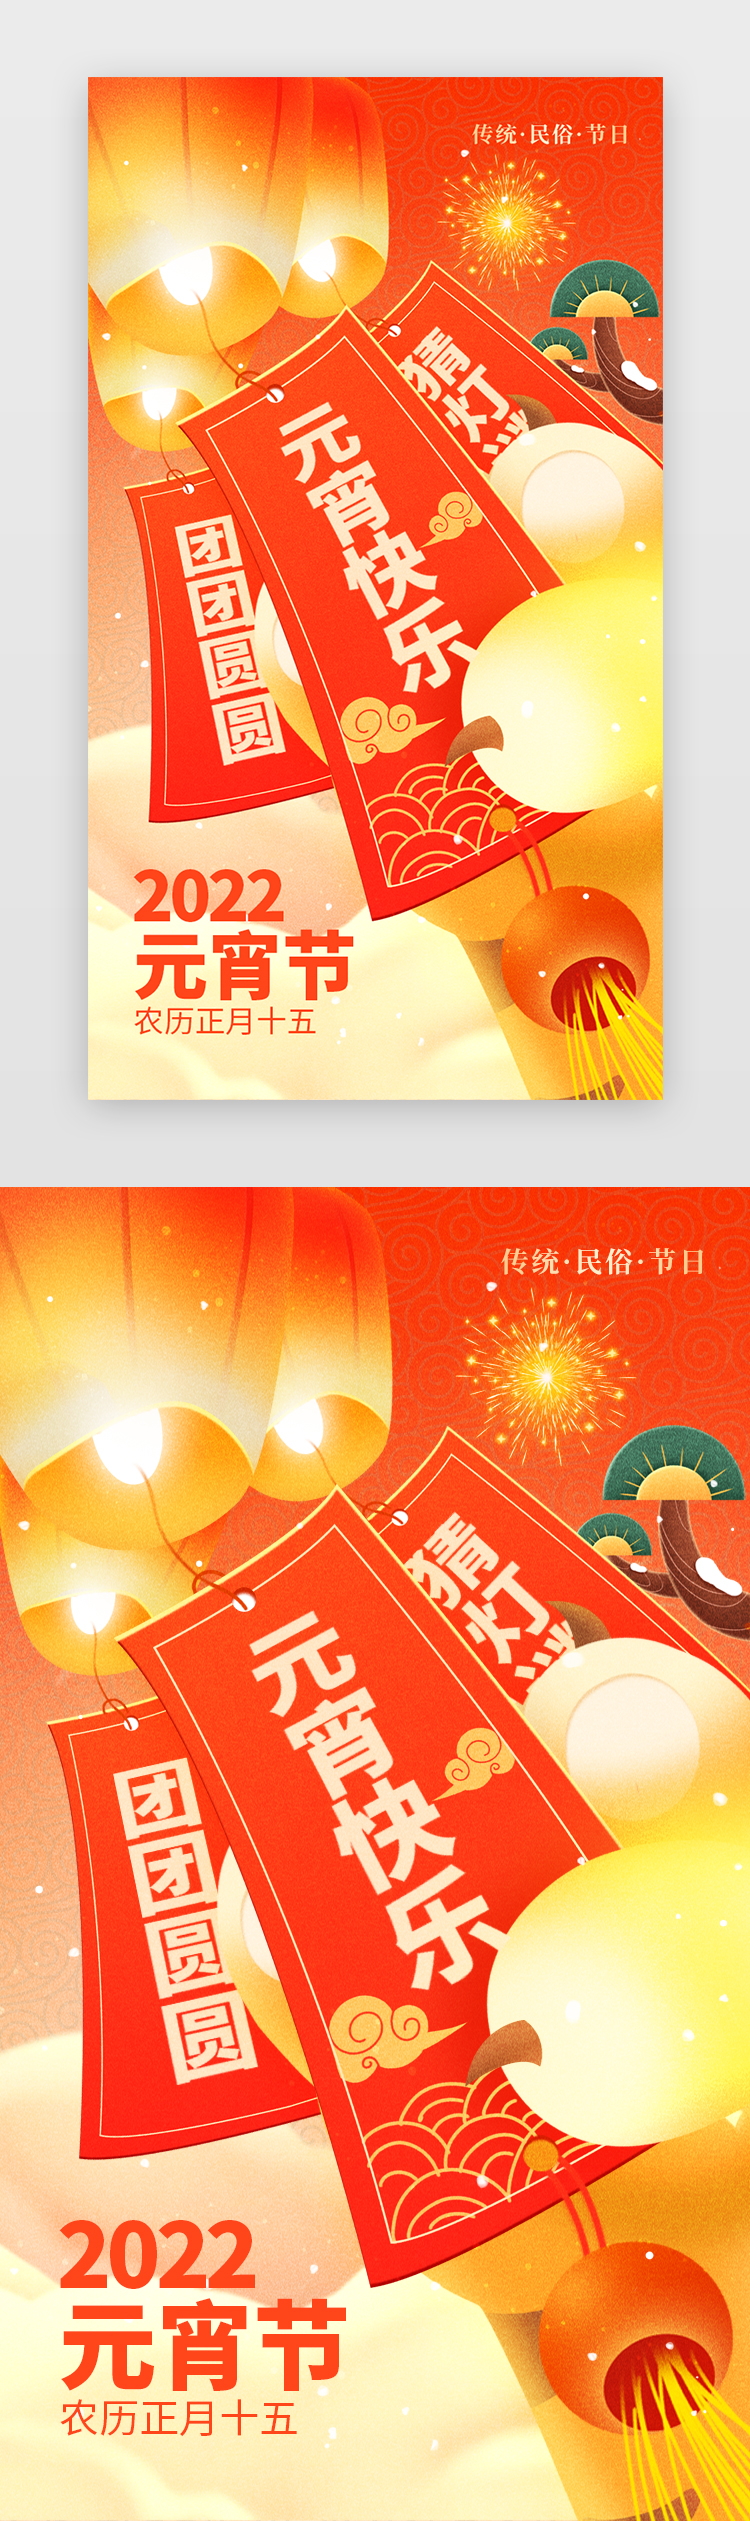 正月十五元宵节app闪屏创意橙红色虎爪图片